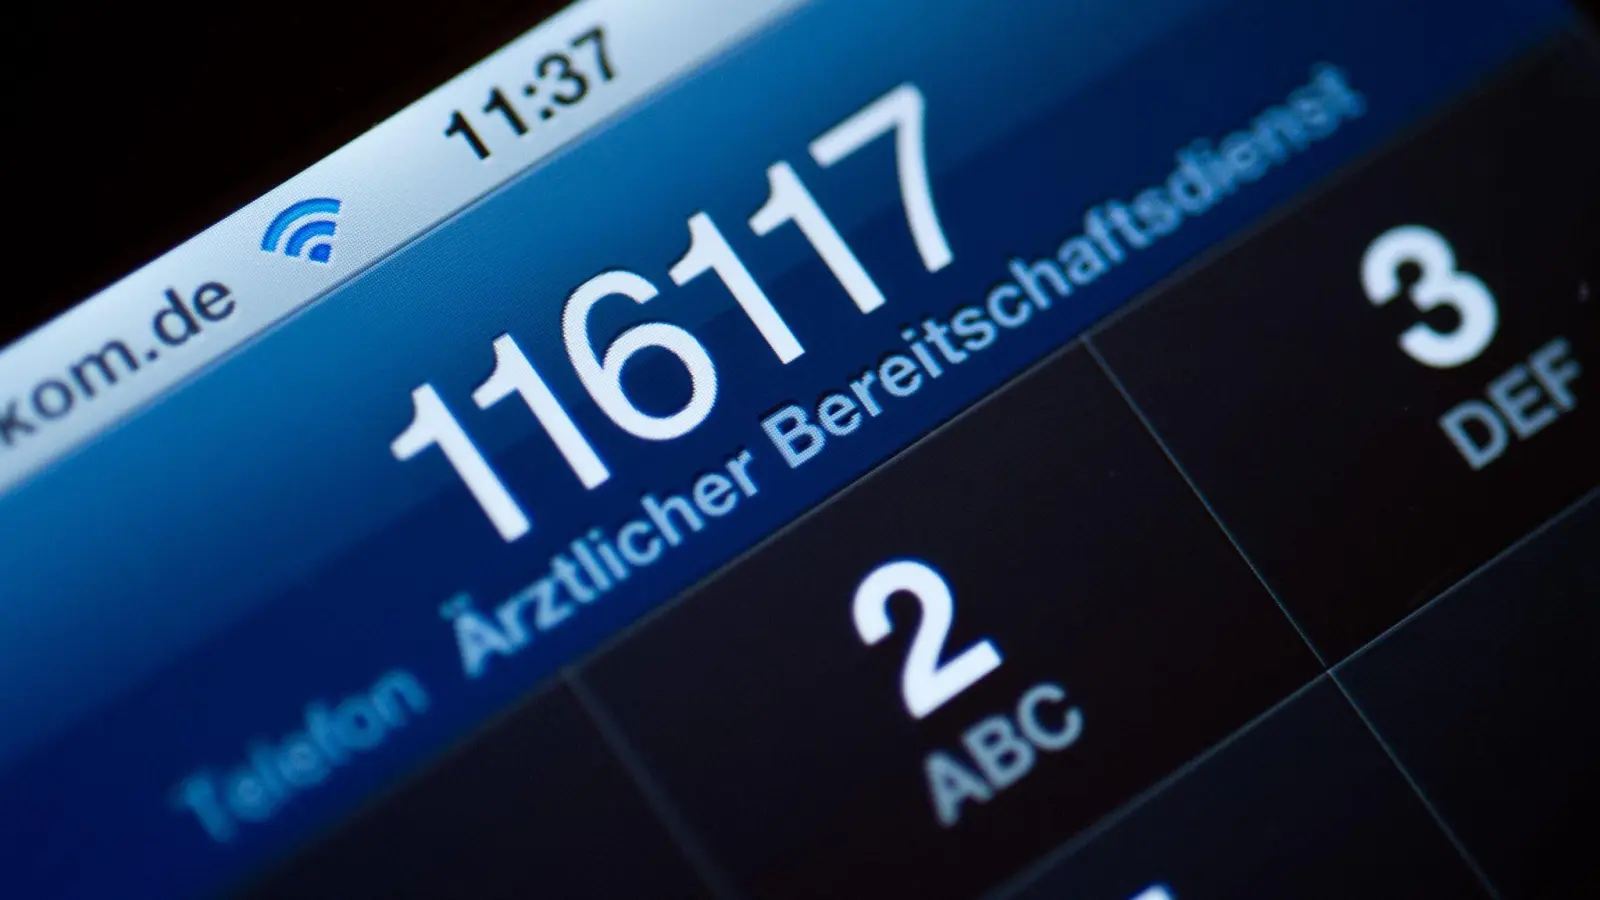 Die Telefonnummer 116 117 des ärztlichen Bereitschaftsdienstes ist auf dem Display eines Smartphones am zu lesen. (Foto: Patrick Pleul/dpa-Zentralbild/dpa)